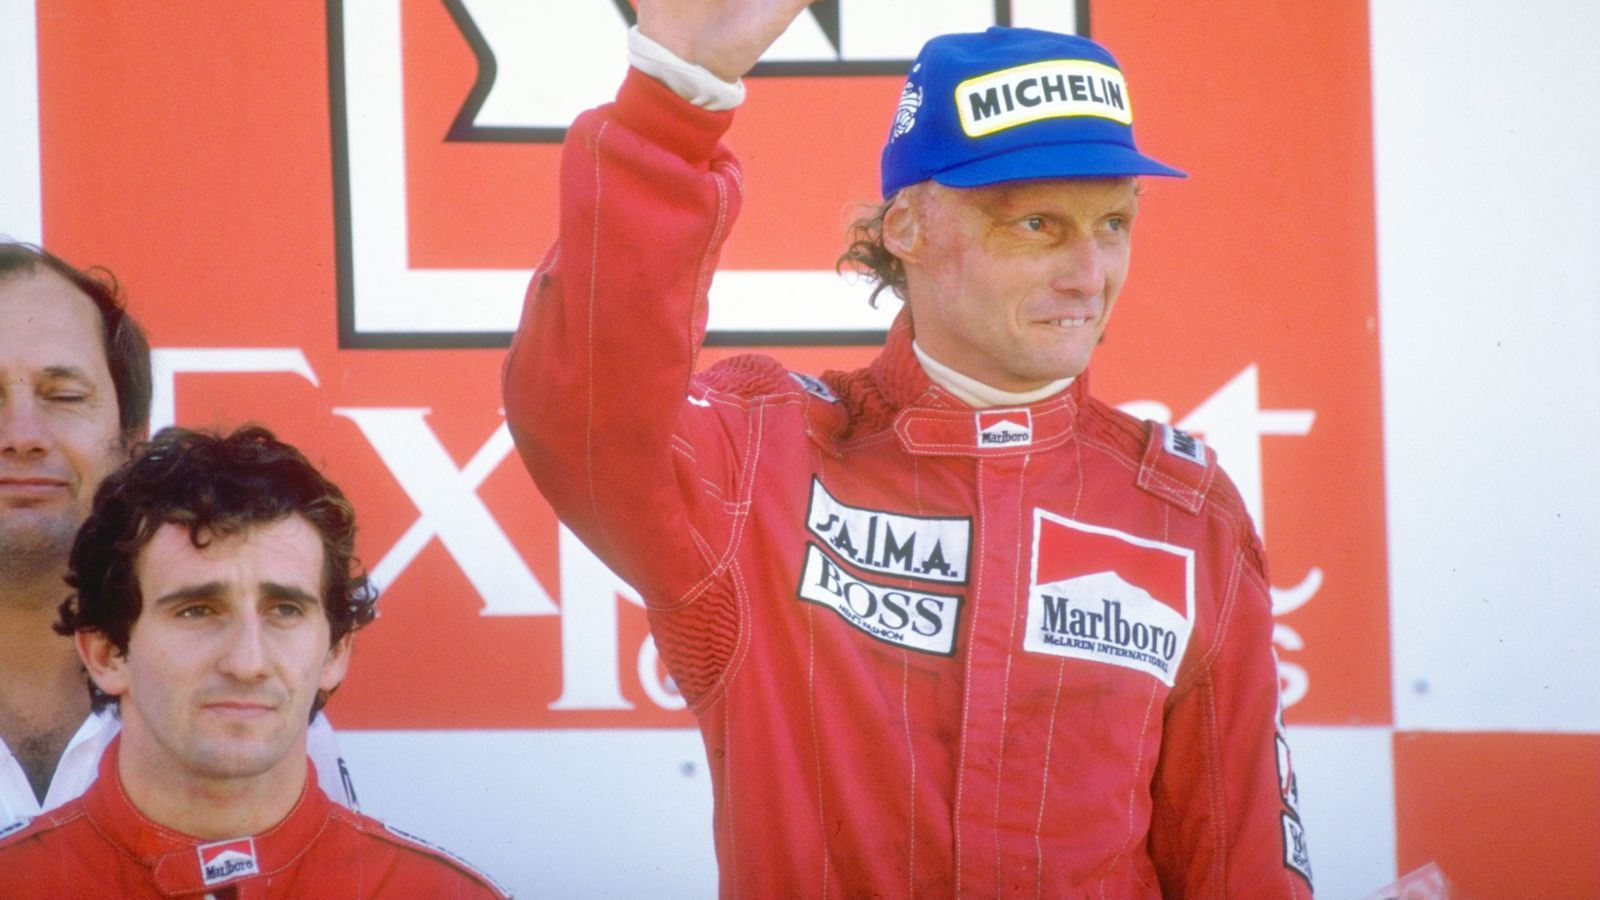 <strong>1984 - Ein halber Punkt Unterschied - Niki Lauda 72, Alain Prost 71.5</strong><br>Der engste Fight der F1-Geschichte! Lauda war einen halben (!) Punkt vor seinem Teamkollegen Prost. Beide gewannen jeweils fünf Rennen in 1984.&nbsp;